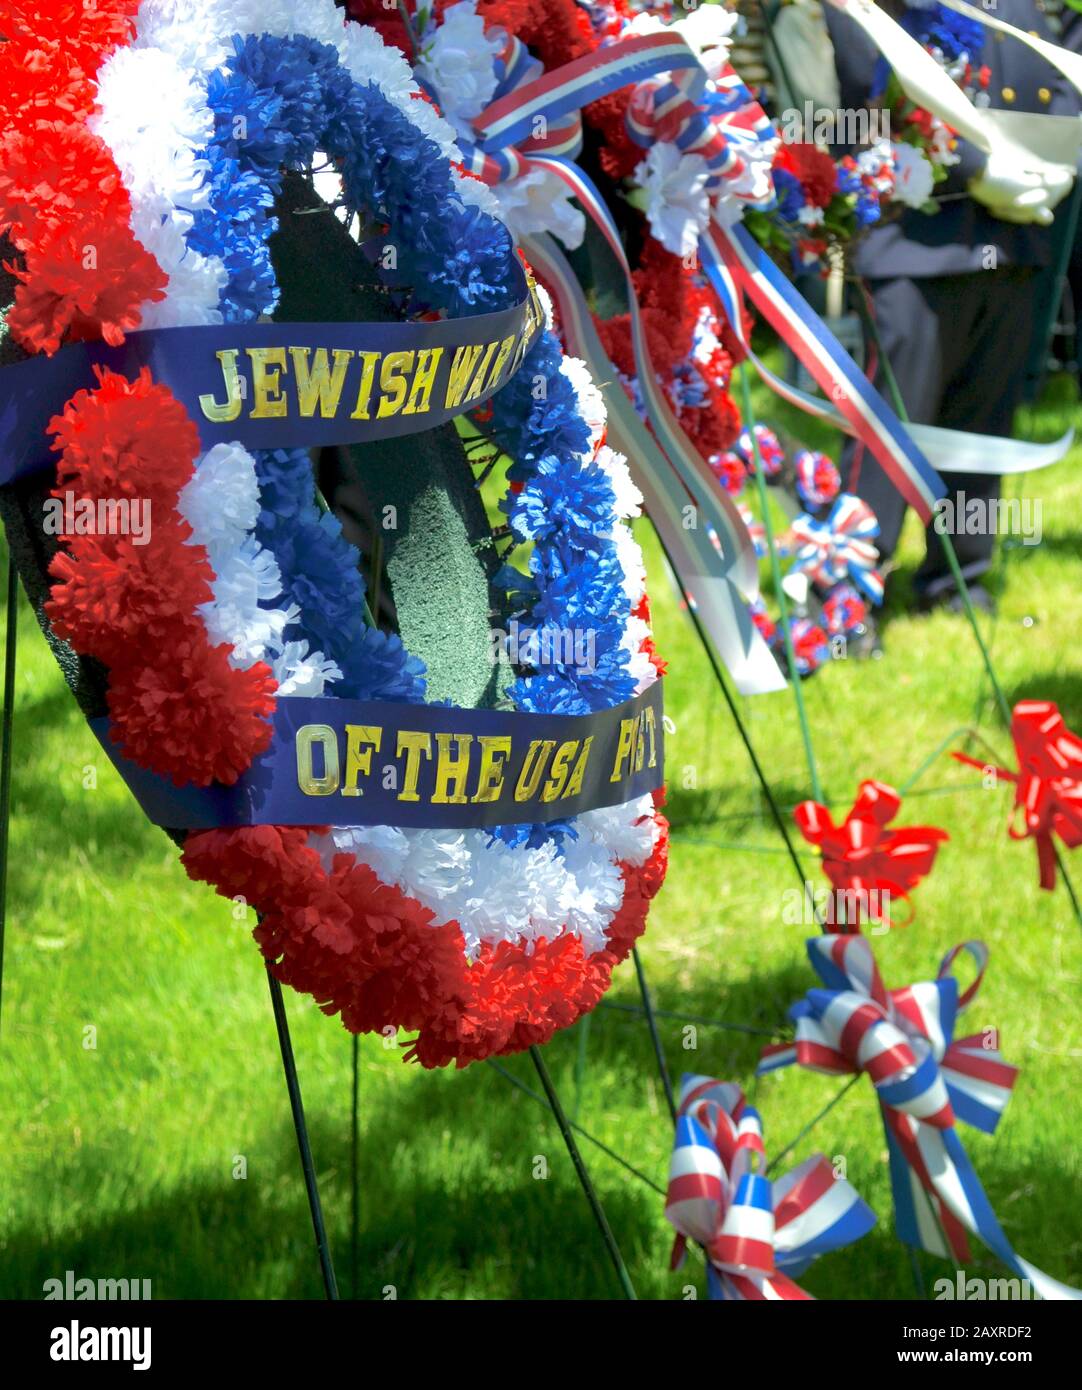 Gros plan d'une couronne commémorative présentée par les anciens combattants de la guerre juive lors de la cérémonie de la Journée commémorative à Setauket, NY. Banque D'Images